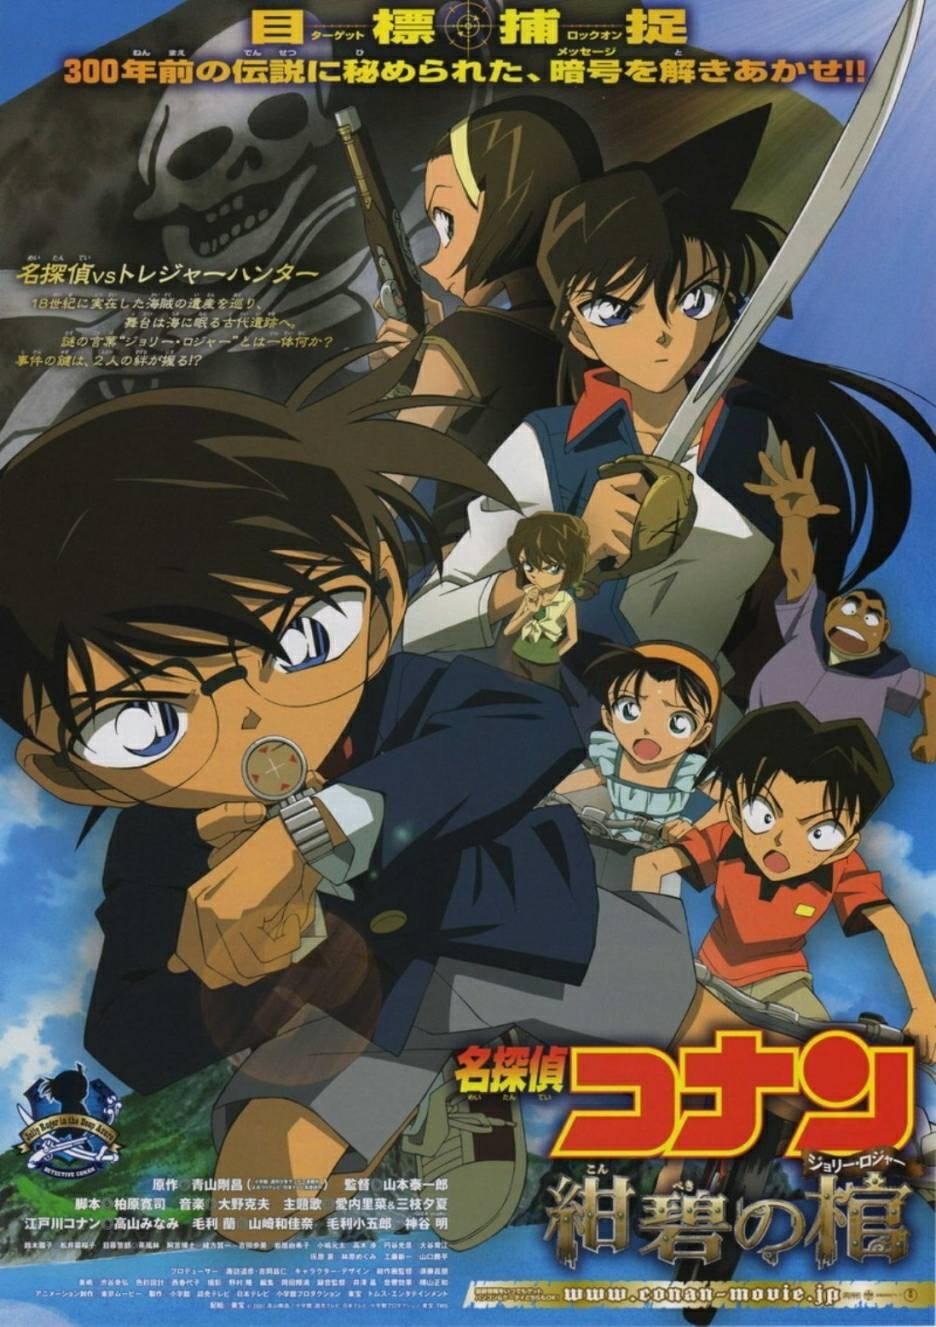 Extra Large Movie Poster Image for Meitantei Conan: Konpeki no hitsugi 